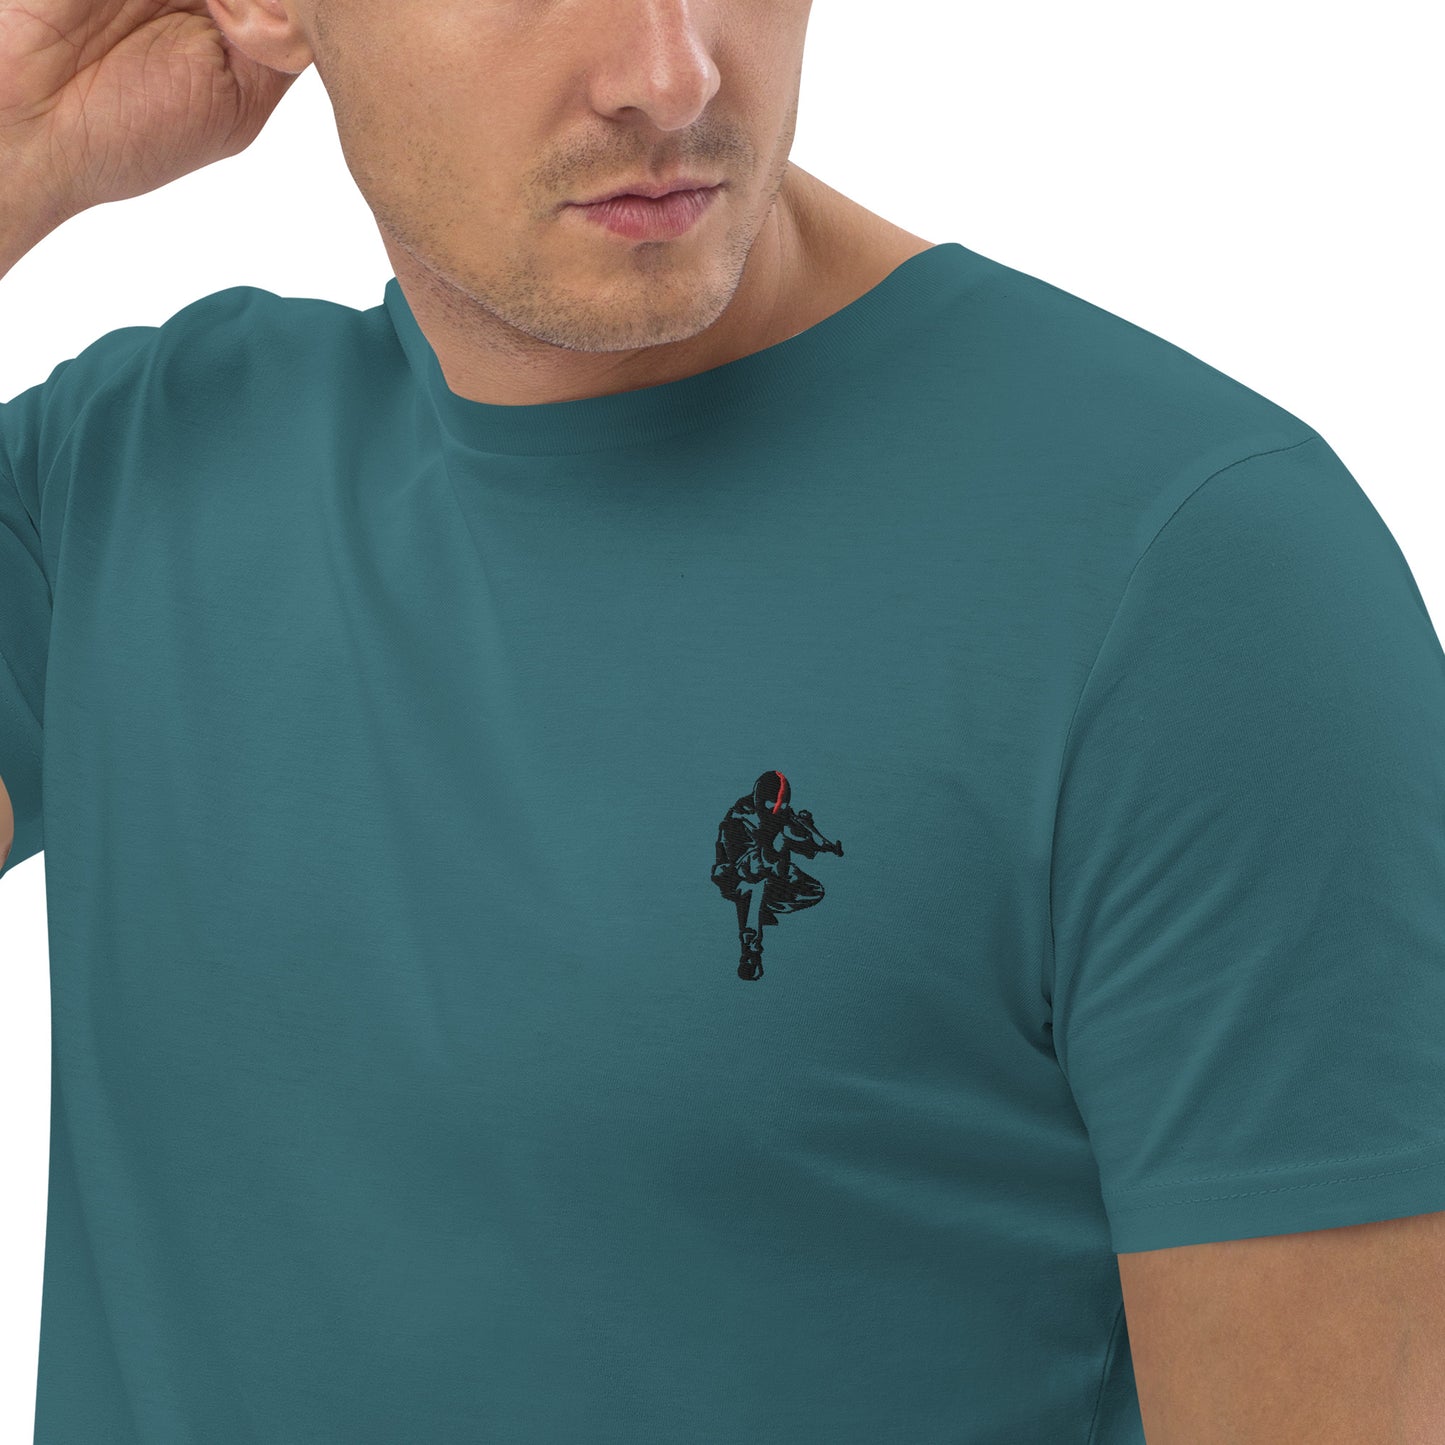 T-shirt unisexe en coton bio Ribellu - Ochju Ochju Stargazer / S Ochju T-shirt unisexe en coton bio Ribellu